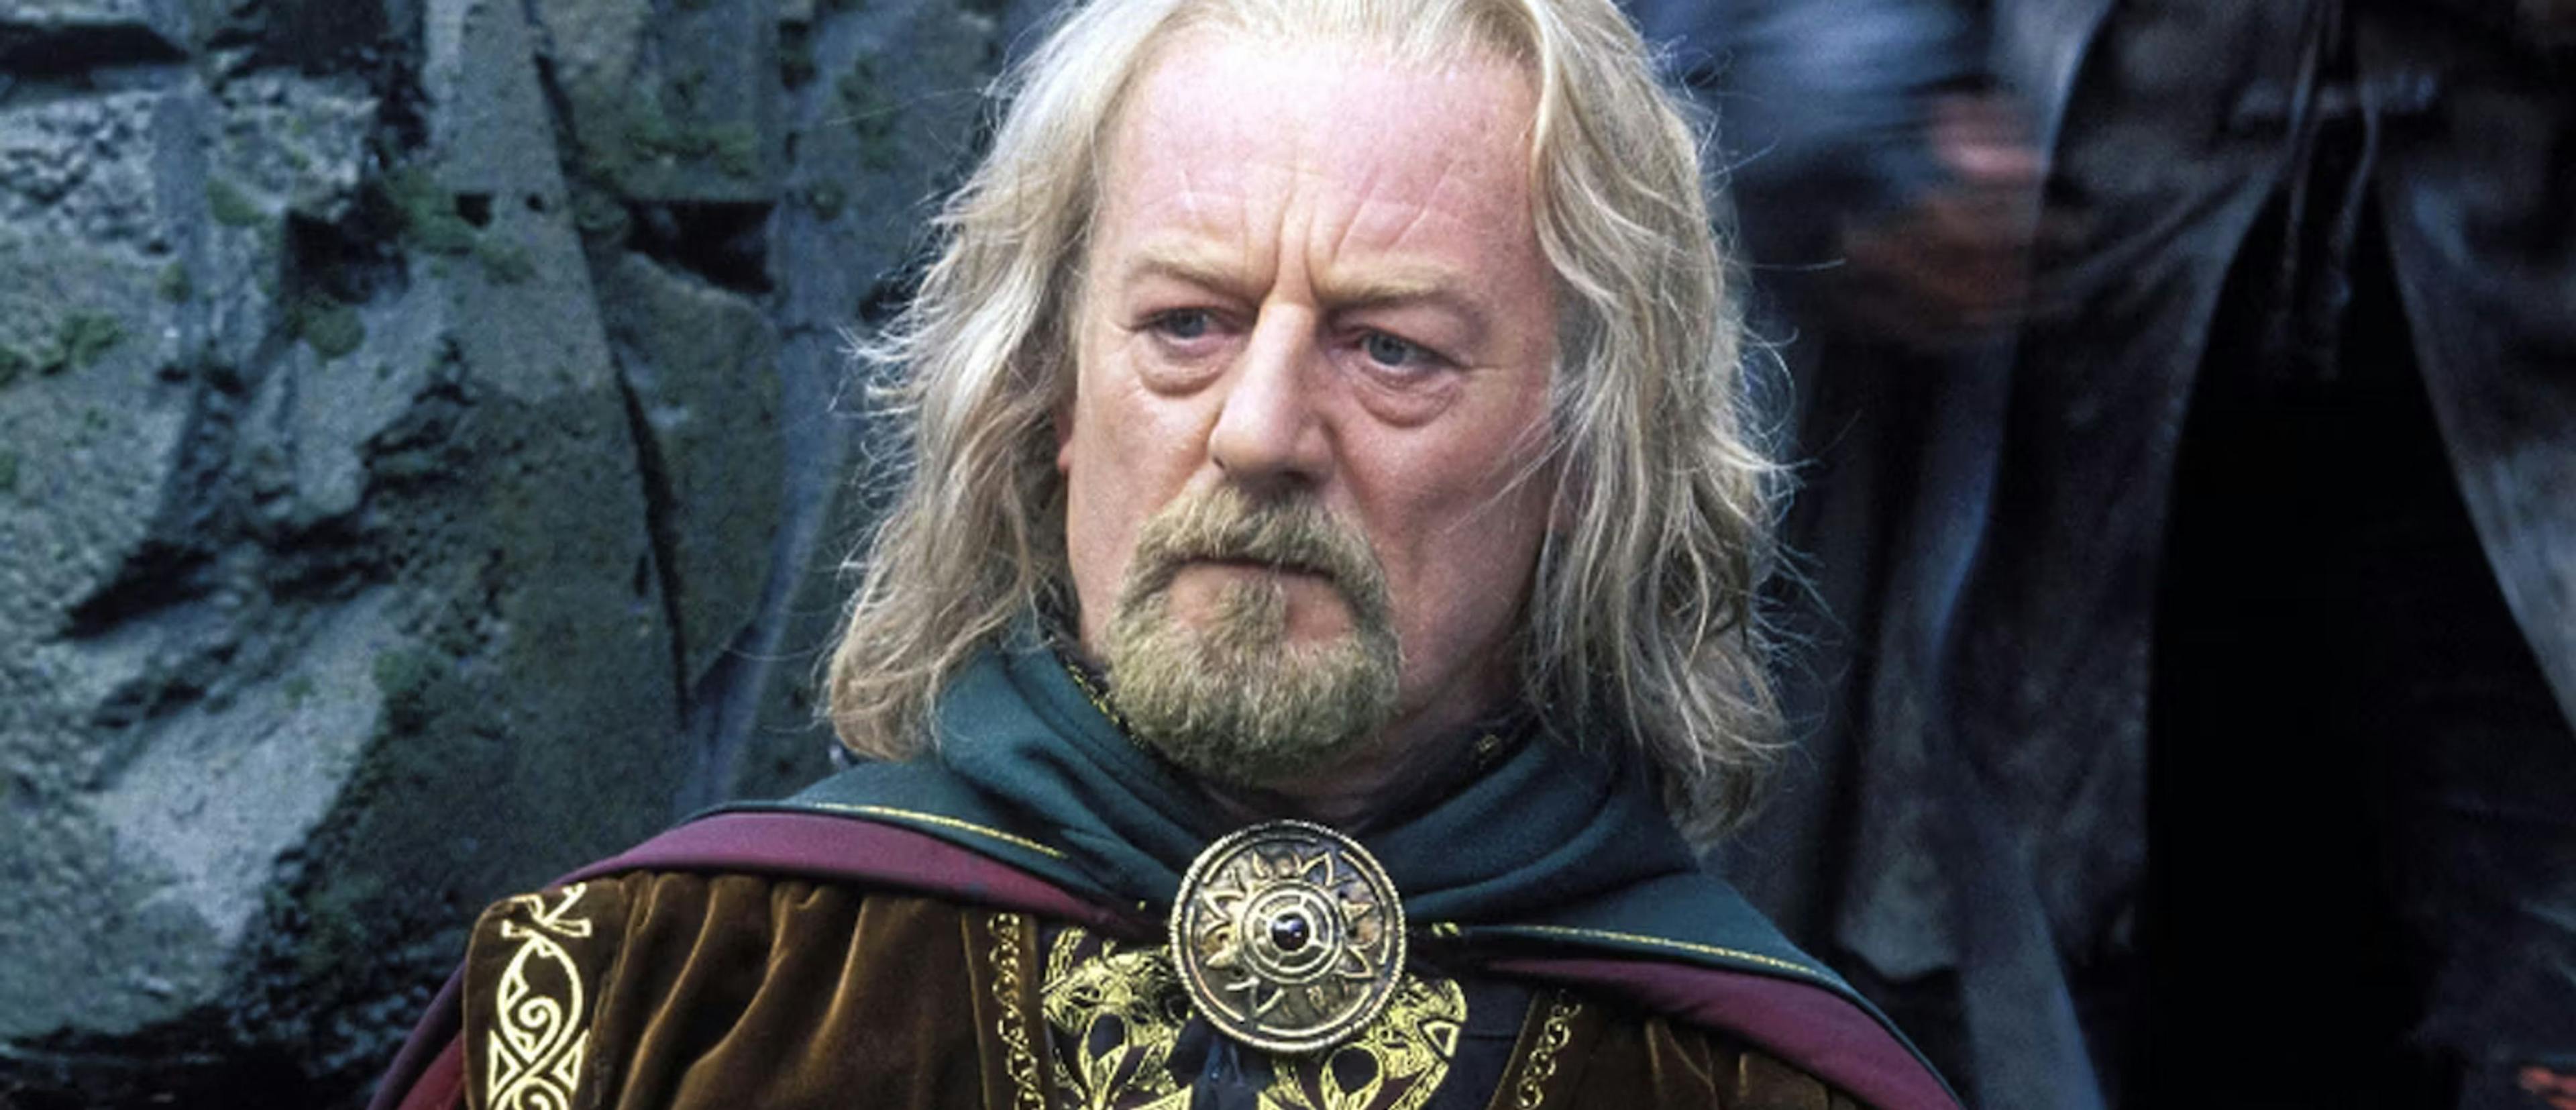 Fotograma de la trilogía de 'El señor de los anillos', con Bernard Hill como el rey Théoden